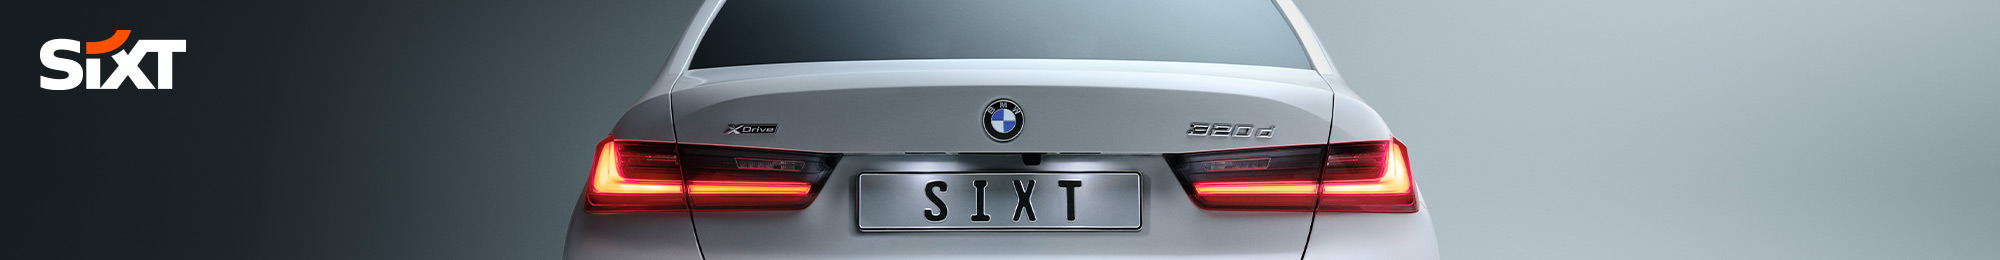 Drei Automodelle in unterschiedlichen Farben von Sixt – PAYBACK Partner